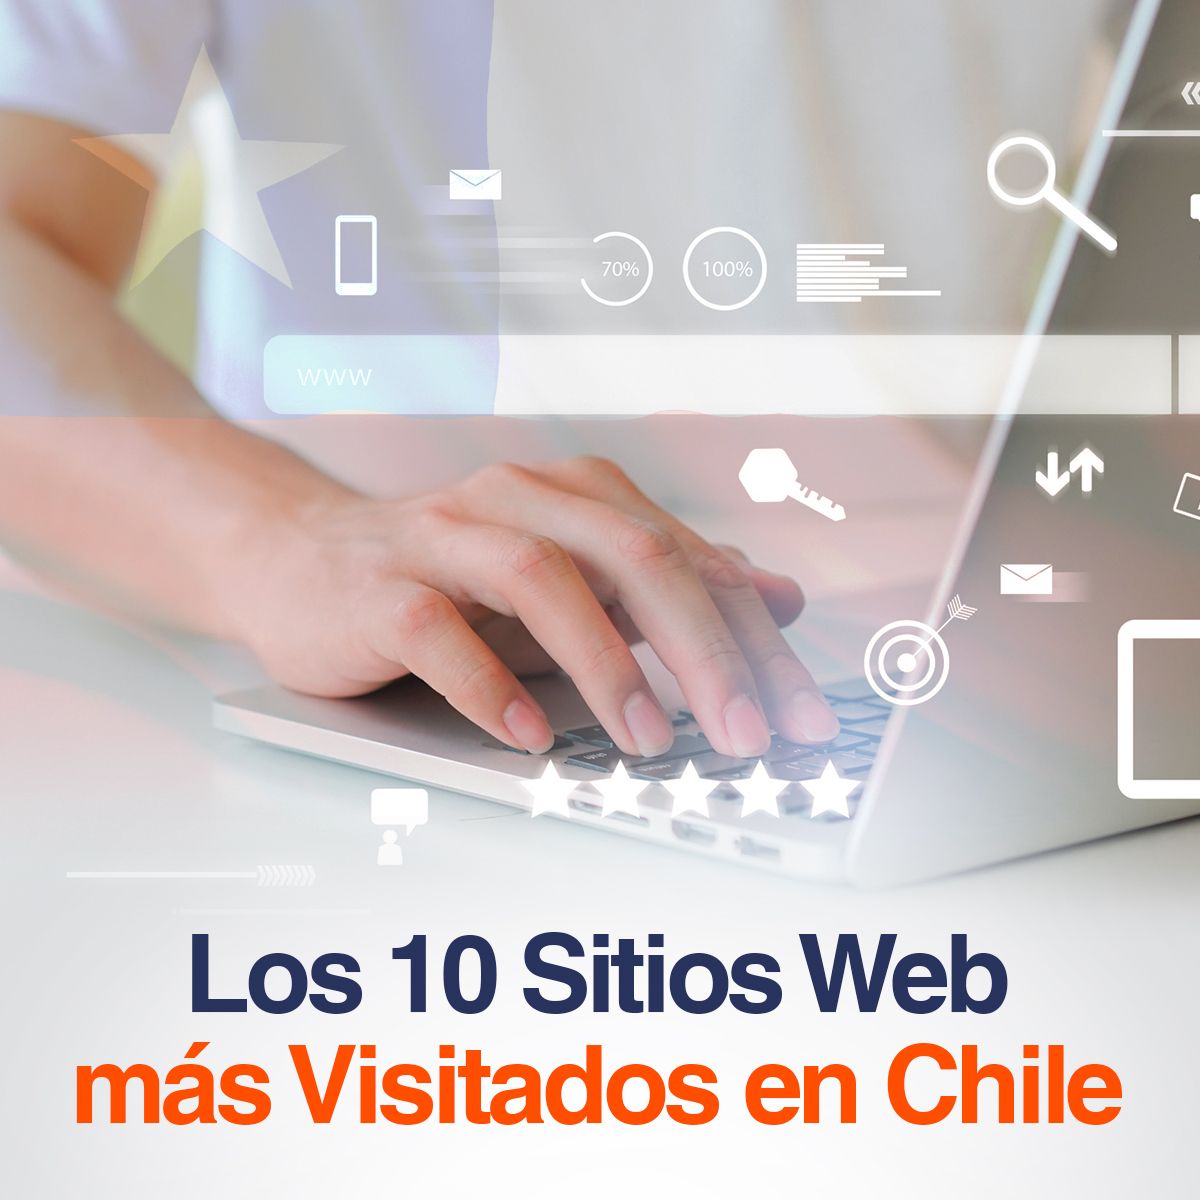 Los 10 Sitios Web más Visitados en Chile